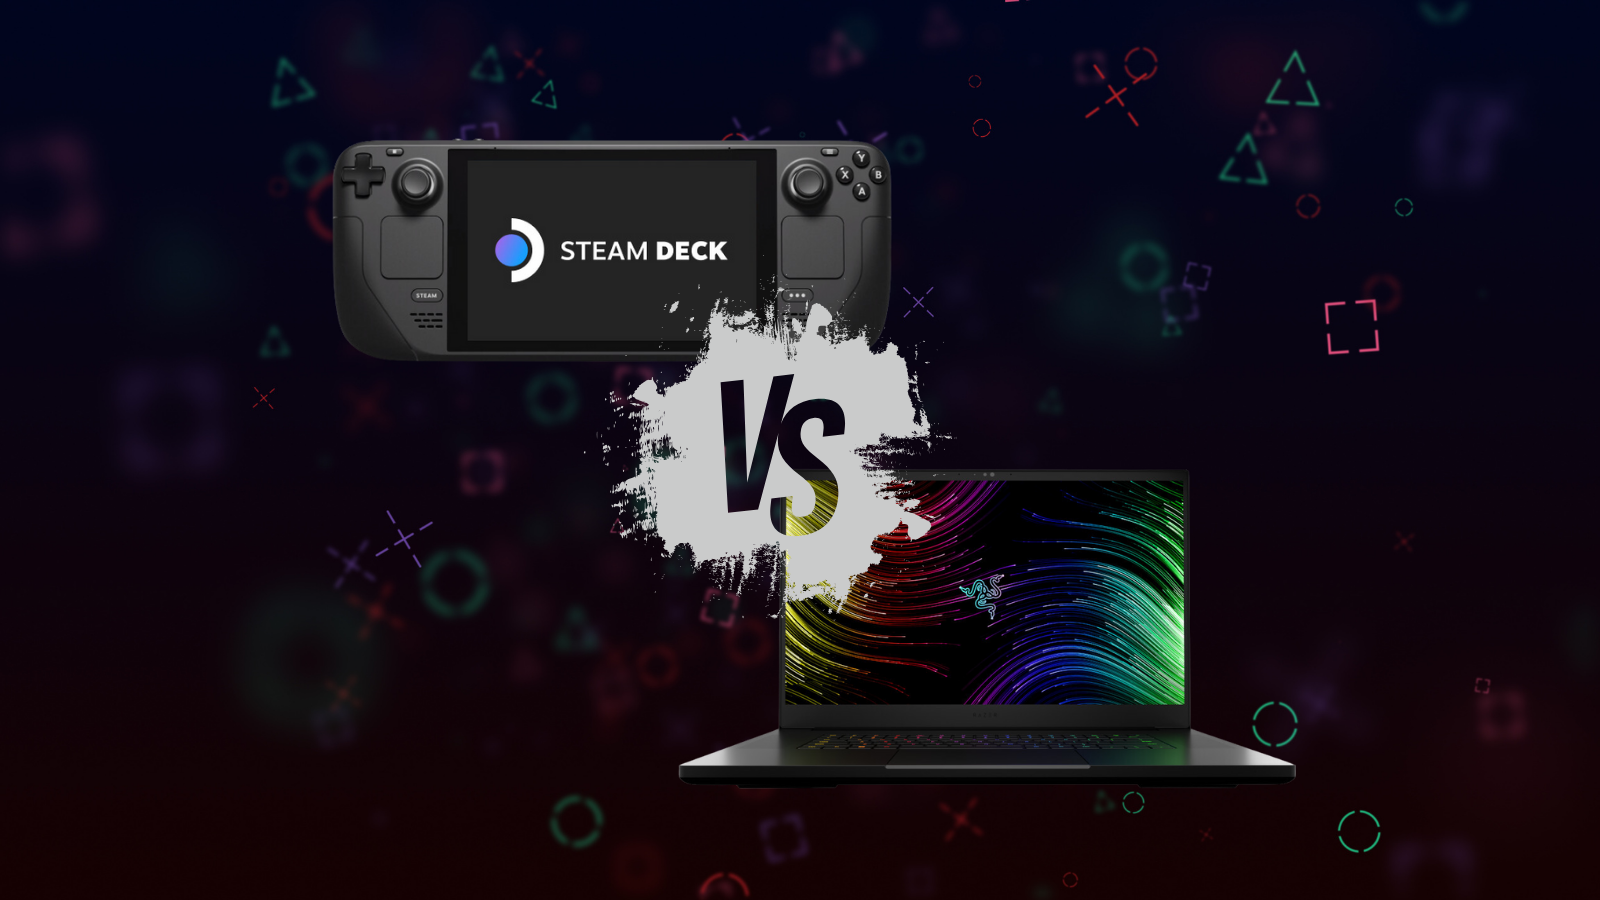 Laptop vs Desktop (RTX 3070 Ti) - Closer Than You Think! 